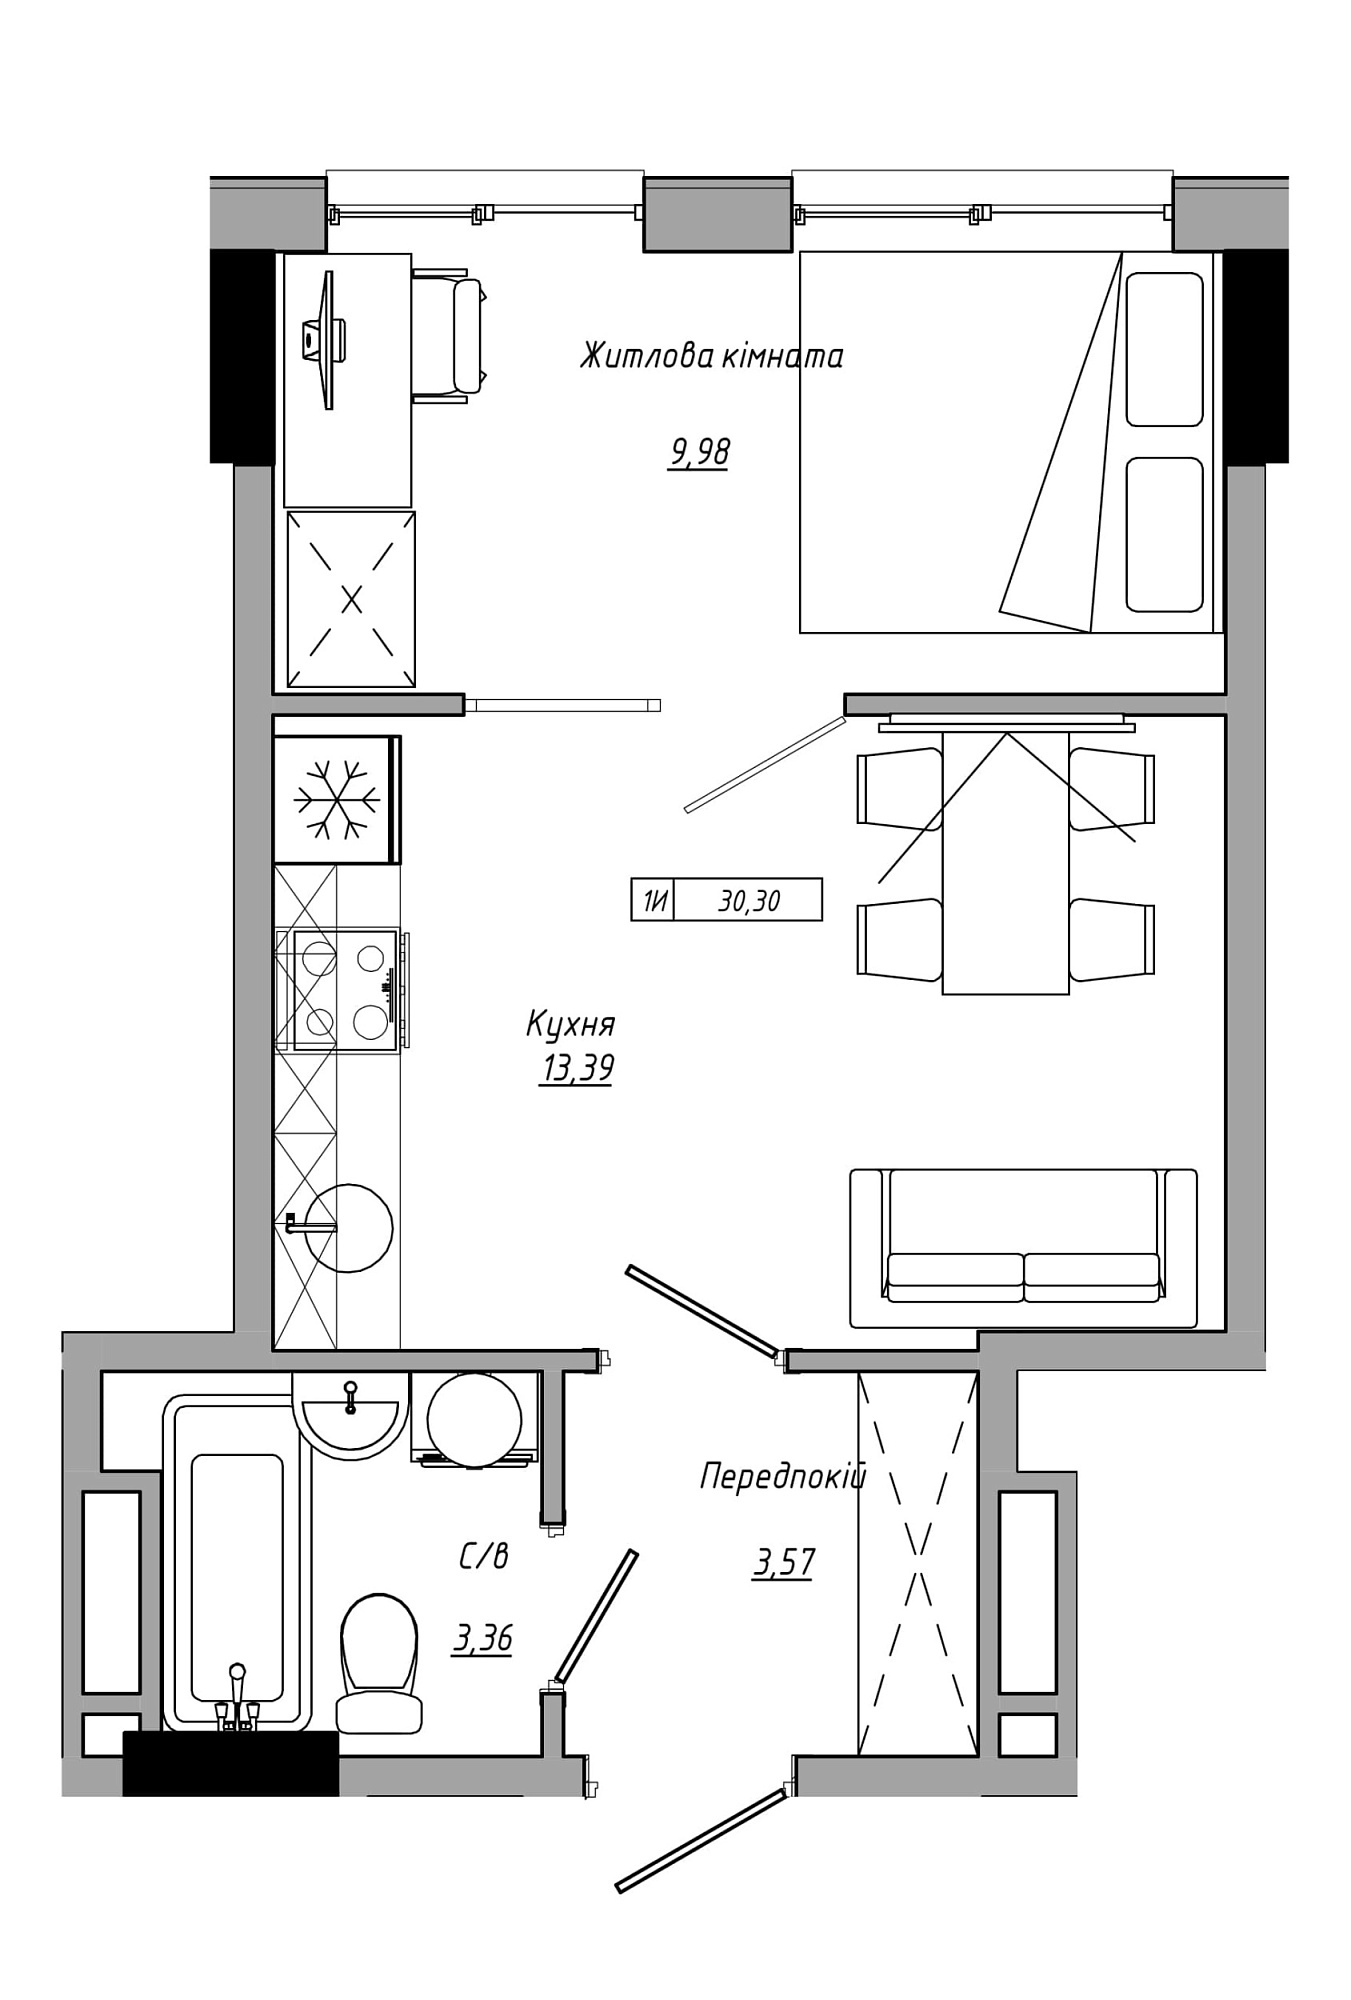 Планування 1-к квартира площею 30.3м2, AB-21-07/00012.